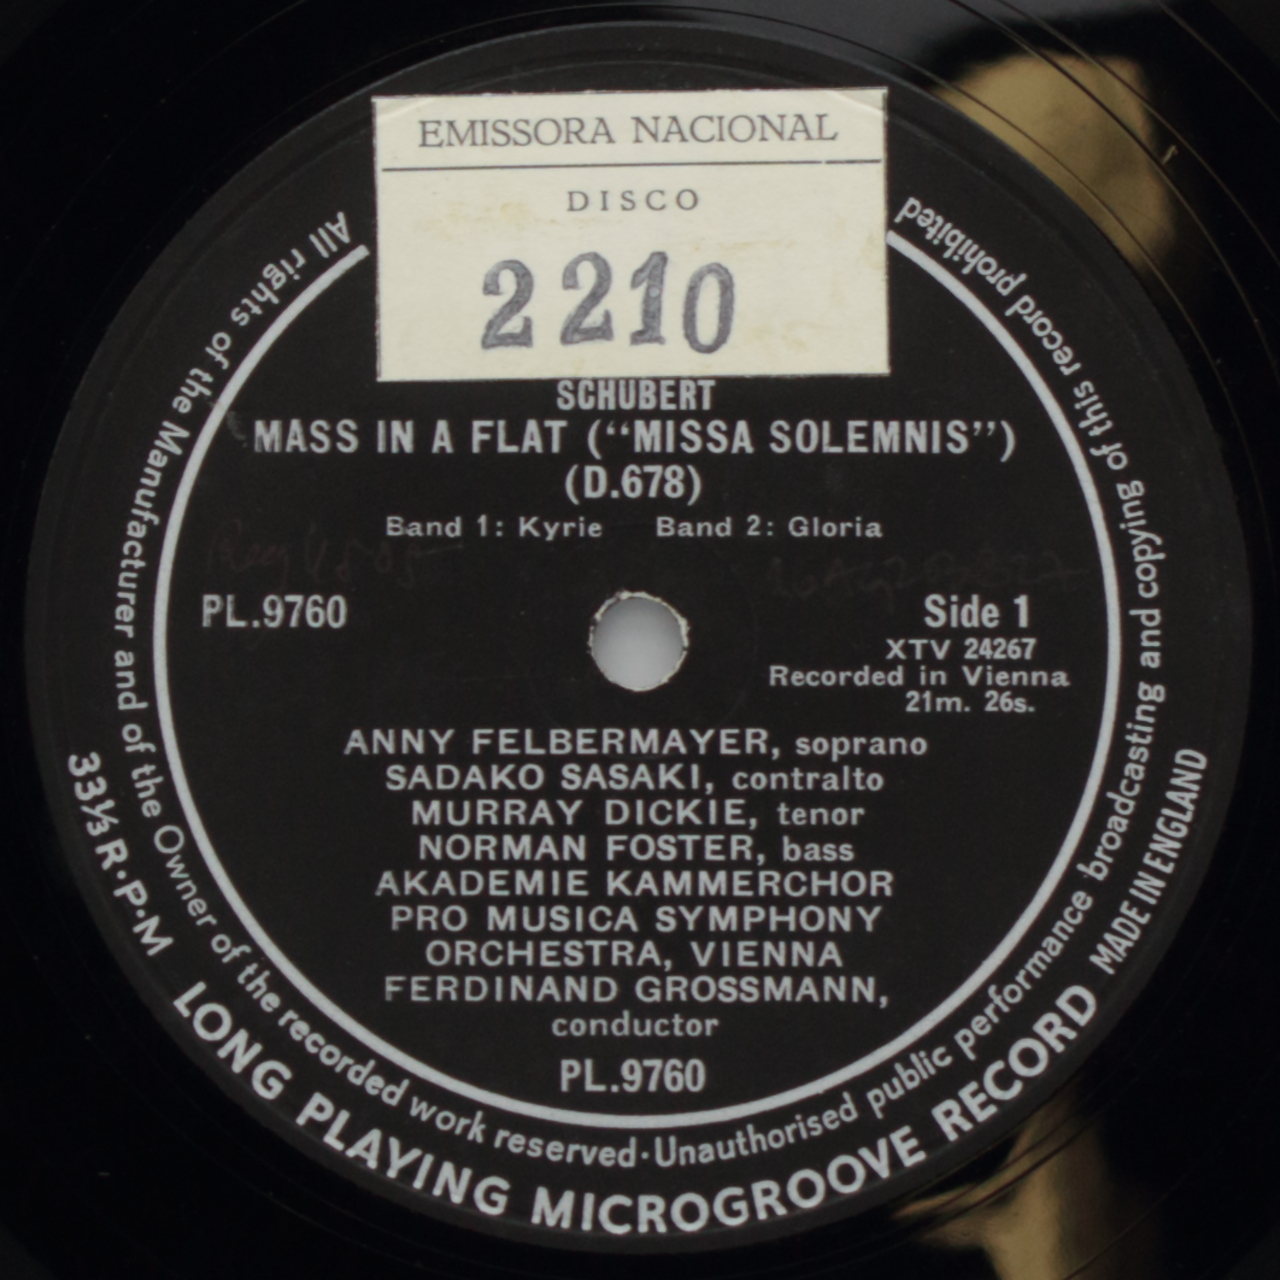 Schubert: Mass in A flat - Missa Solmenis (D.678)